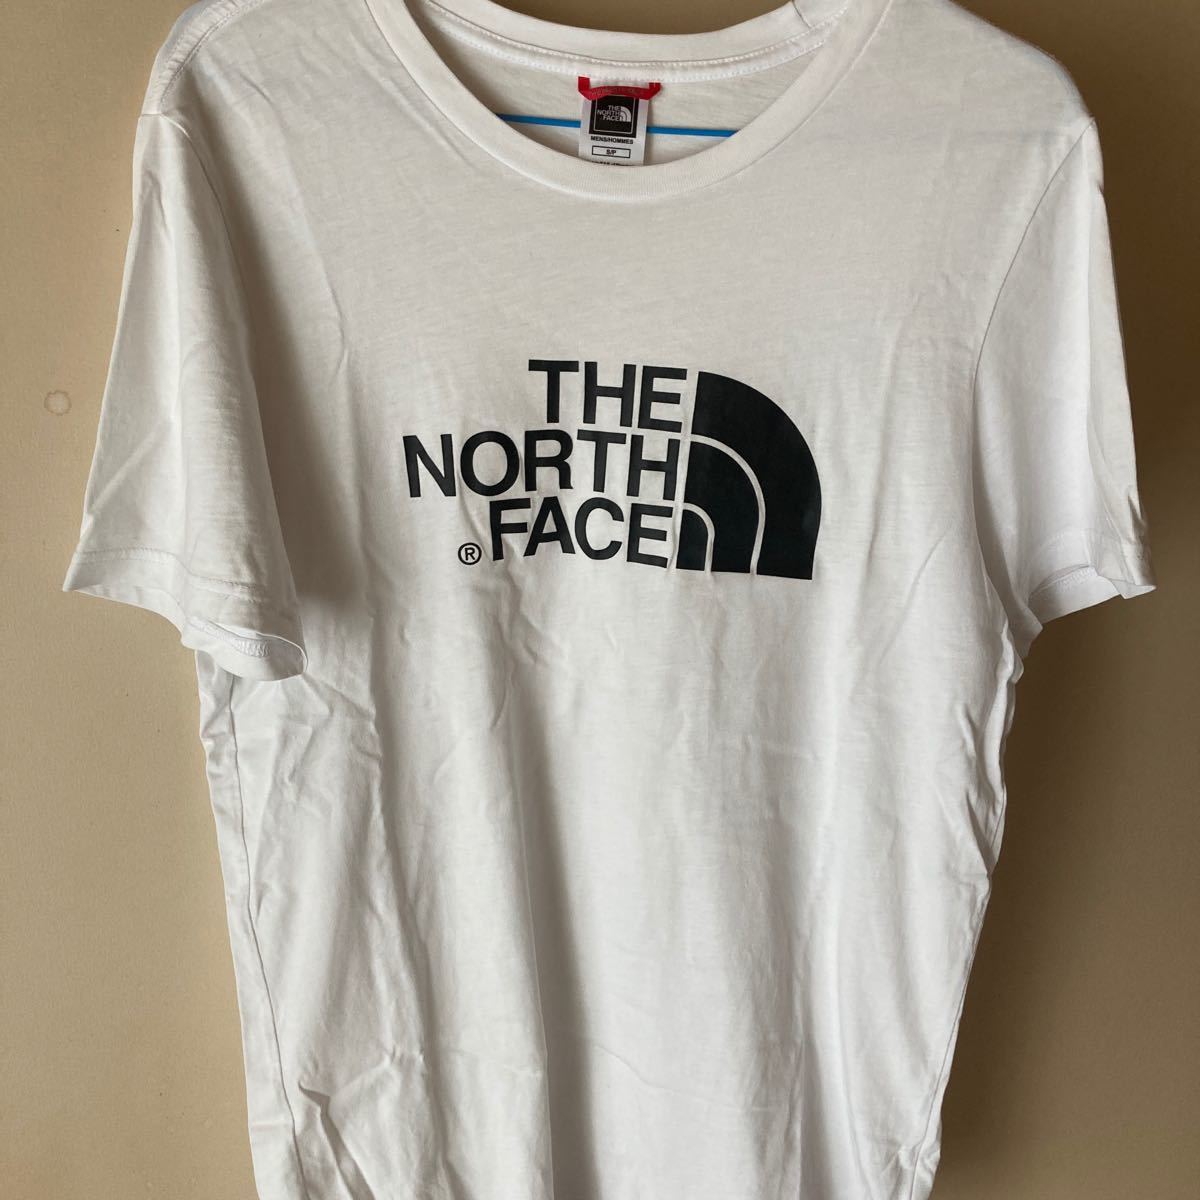 THE NORTH FACE ロゴTシャツ ザノースフェイス 半袖Tシャツ